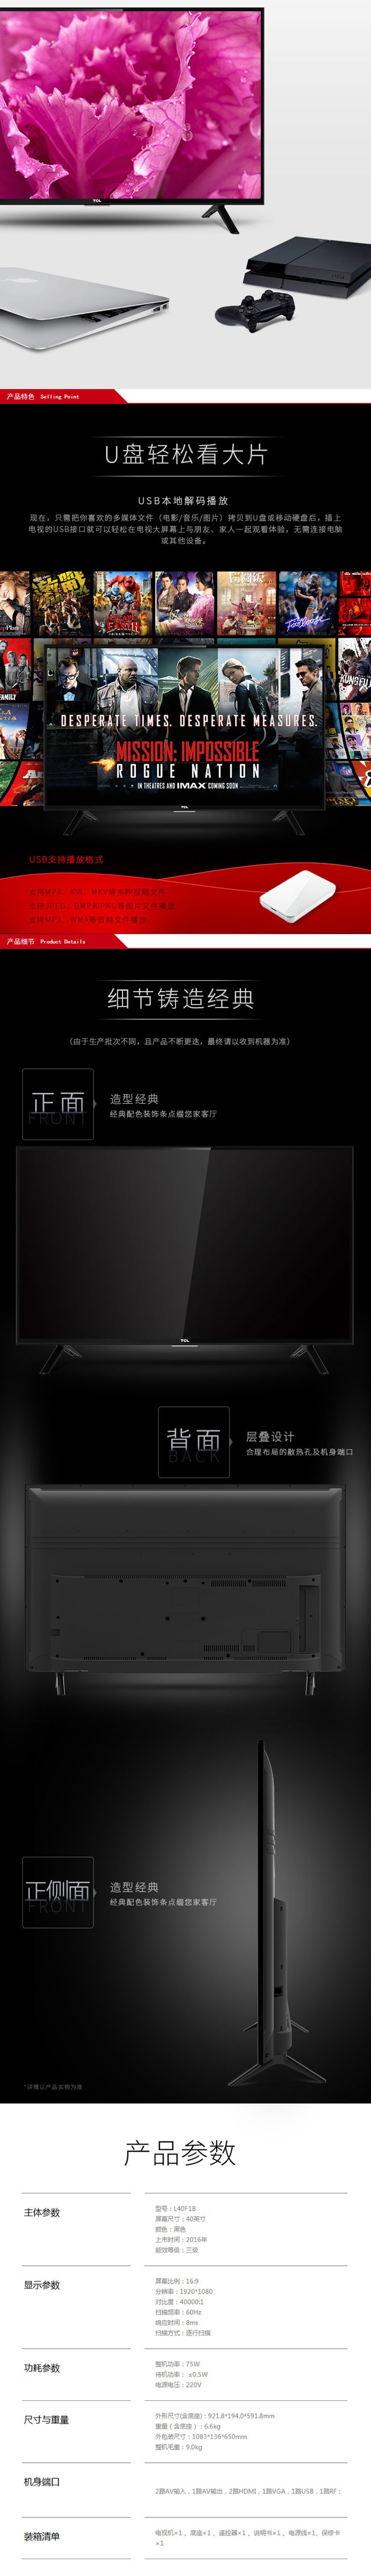 【仅限新乡地区销售】TCL40英寸全高清节能蓝光LED电视  黑色窄边L40F1B